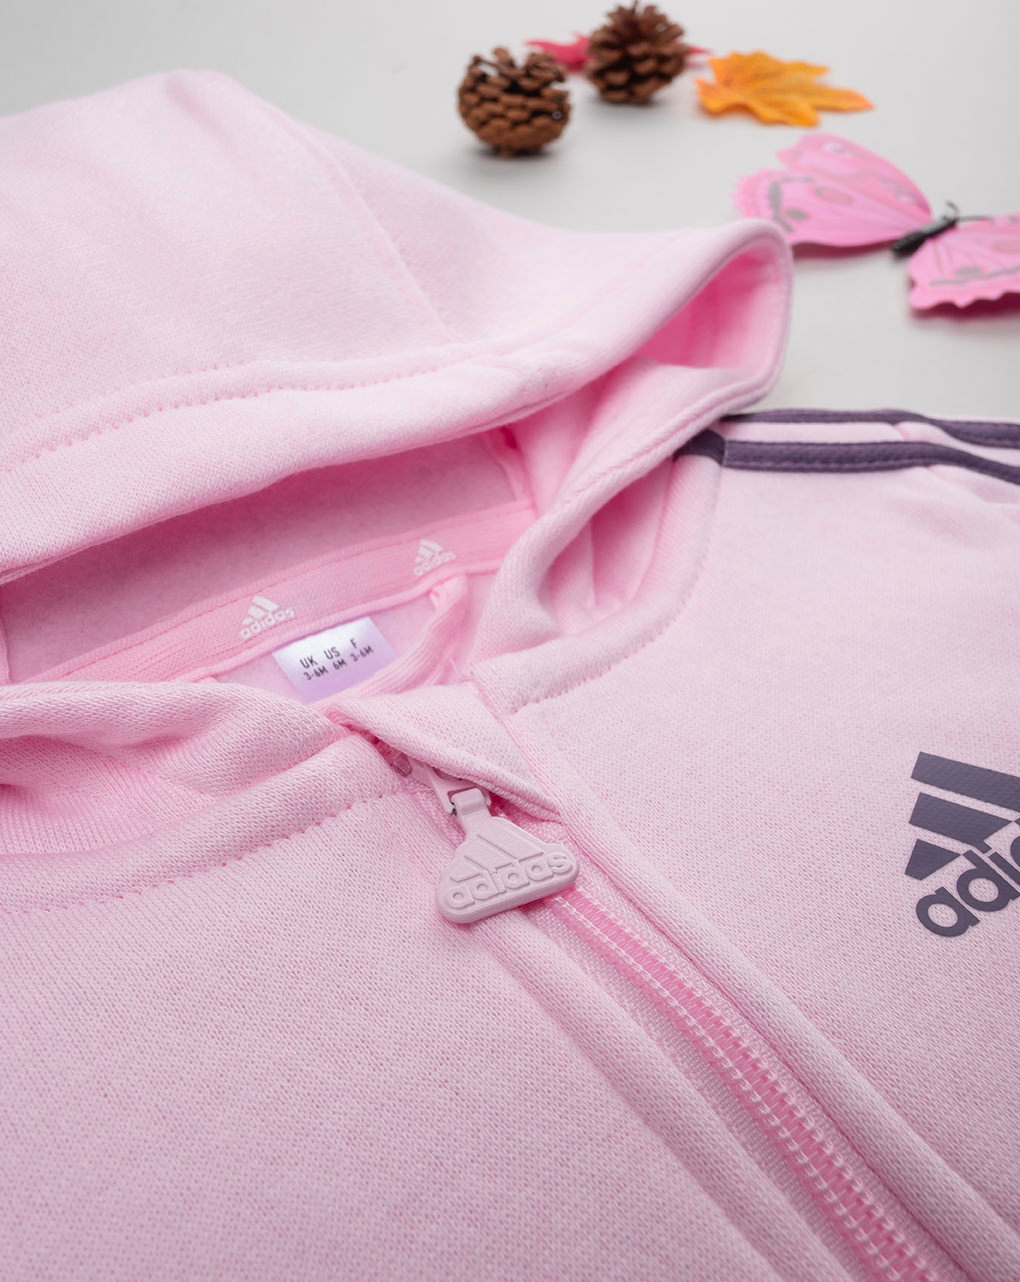 Adidas αθλητικό σετ essentials 3-stripes ij8851 για κορίτσι - Adidas